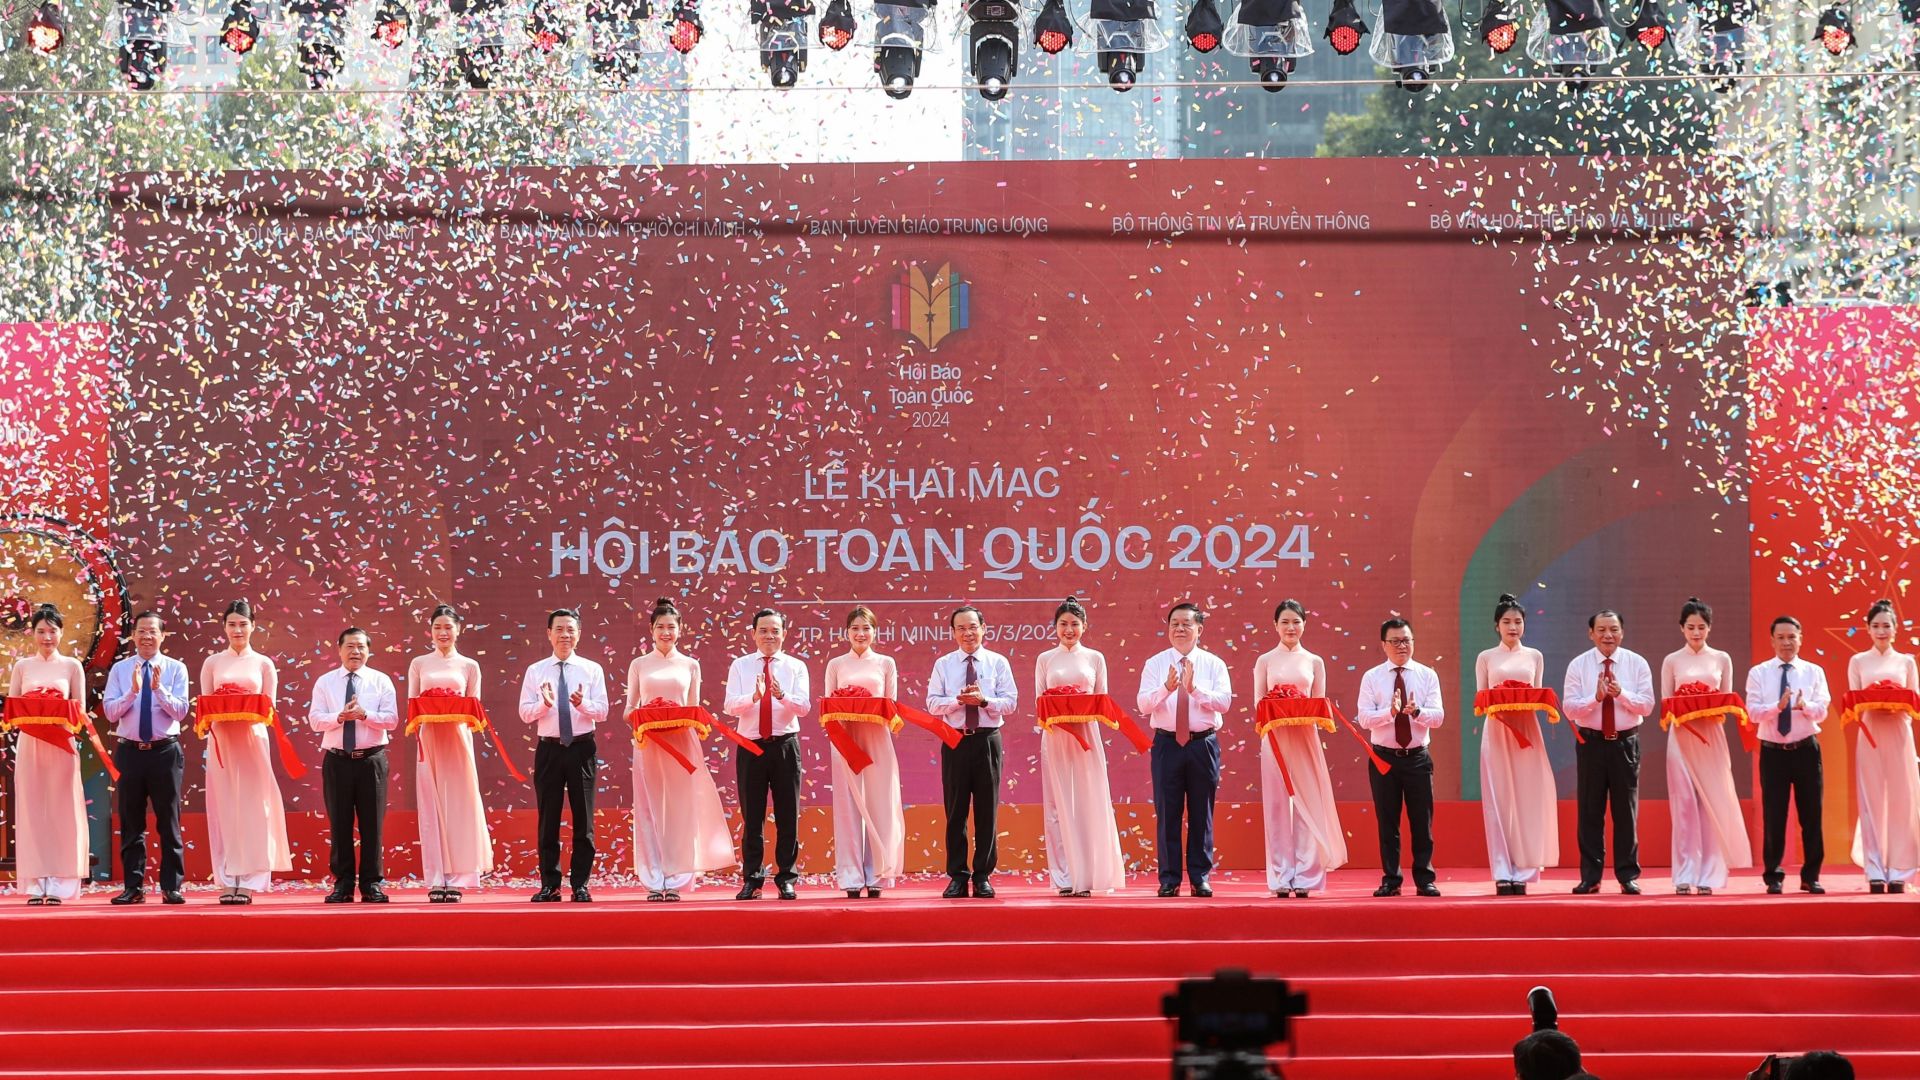 Lãnh đạo Đảng, Nhà nước thực hiện nghi lễ cắt băng khai mạc Hội Báo 2024